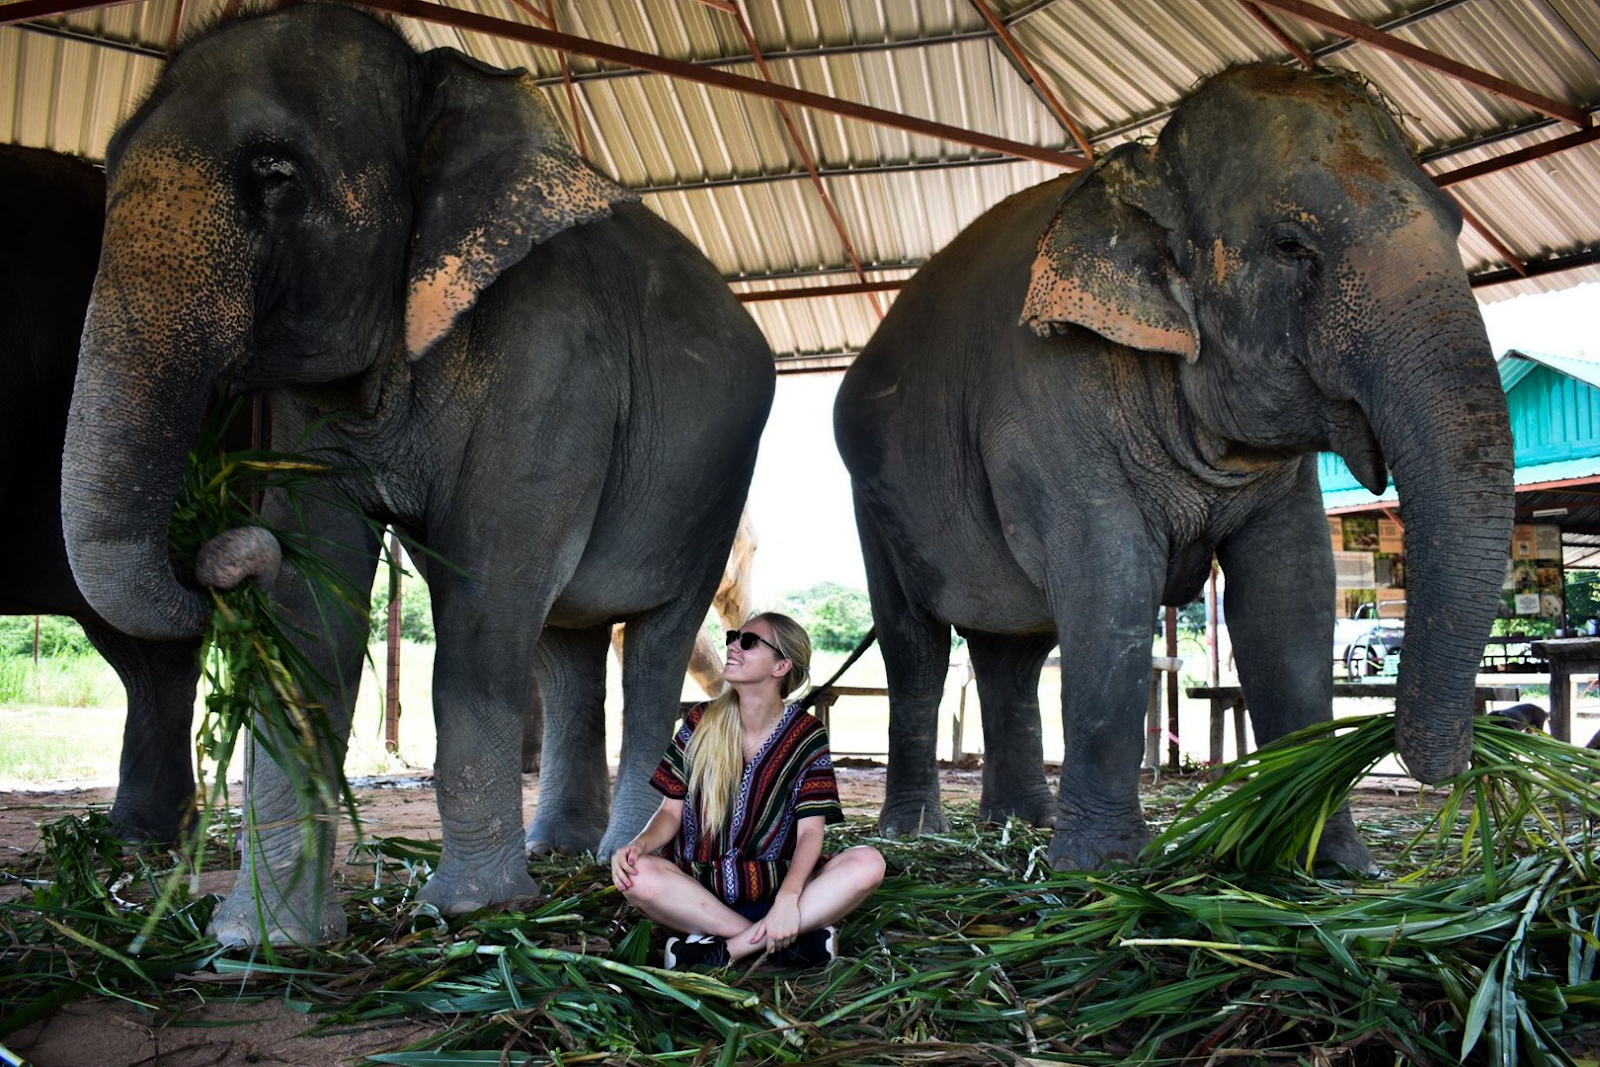 Olivia with elephants